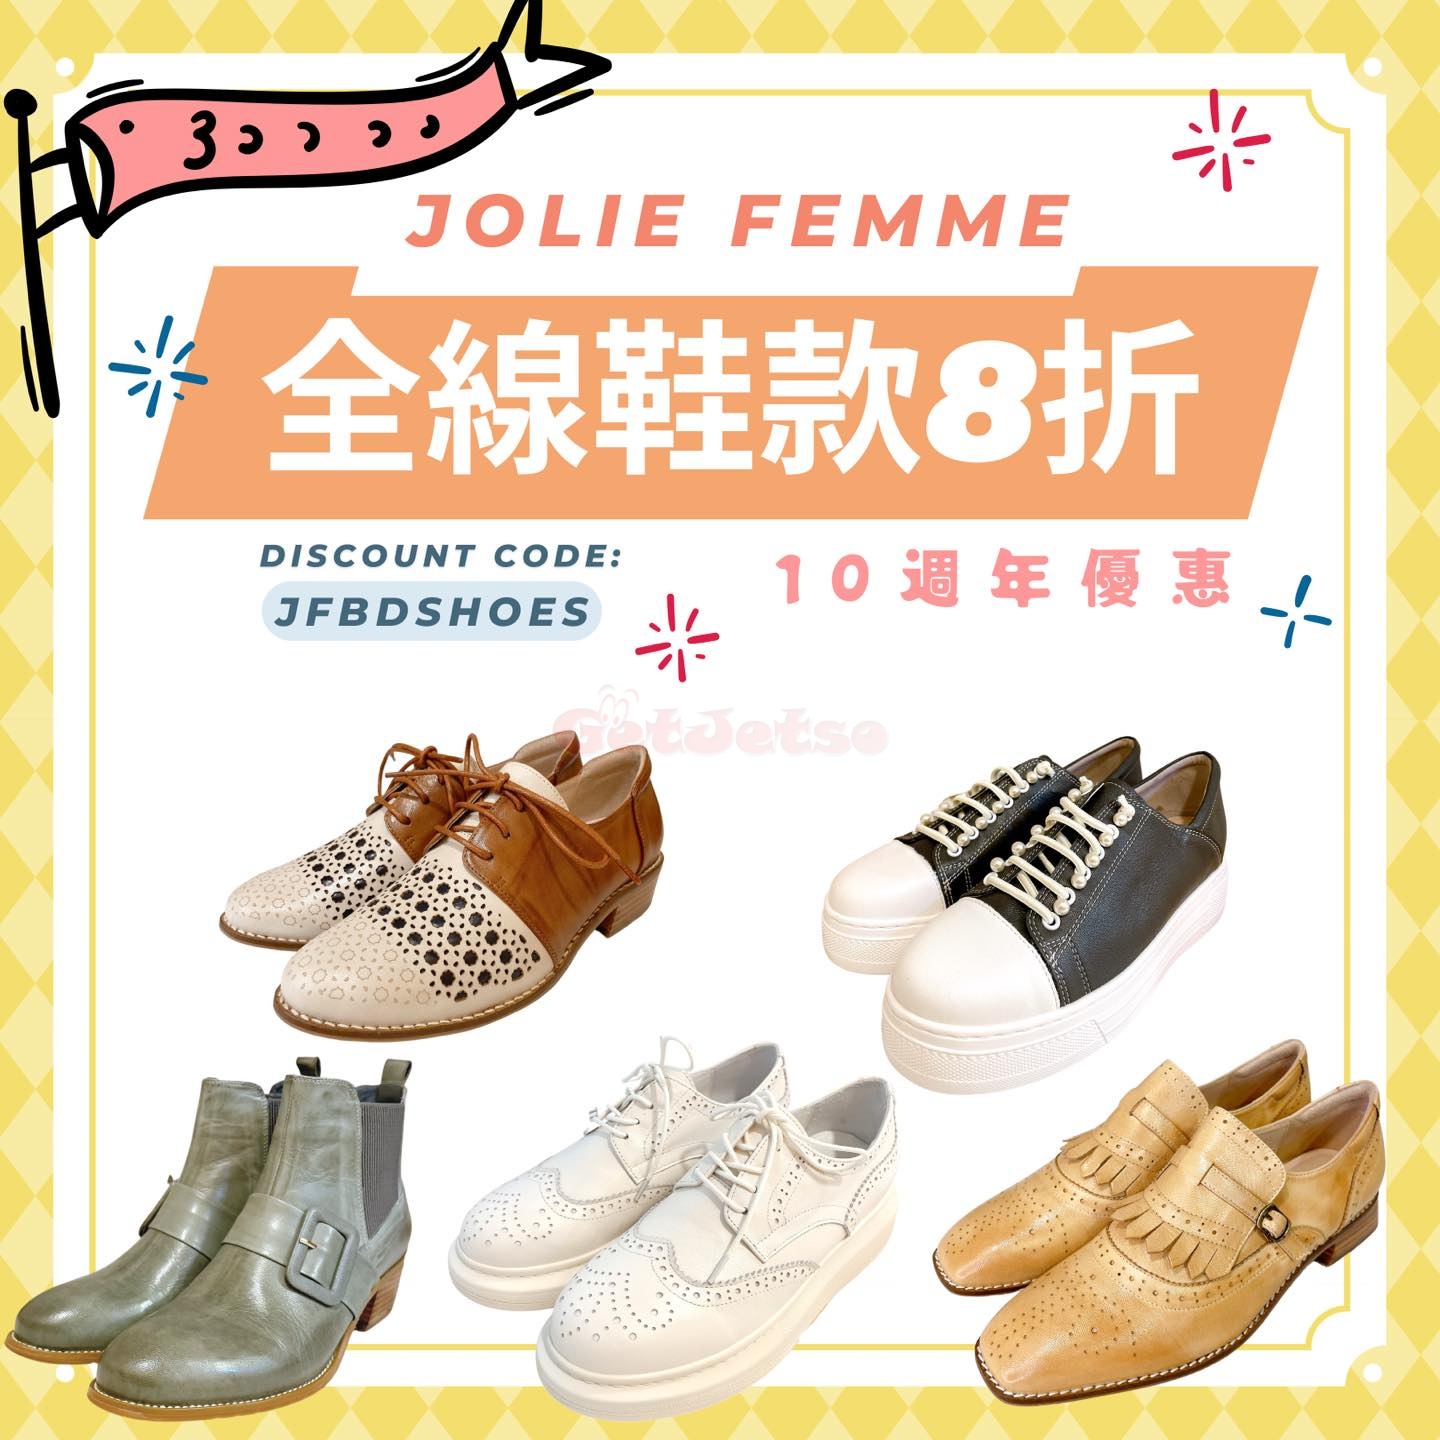 Jolie Femme 全線鞋款8折優惠(11月7日更新)圖片1